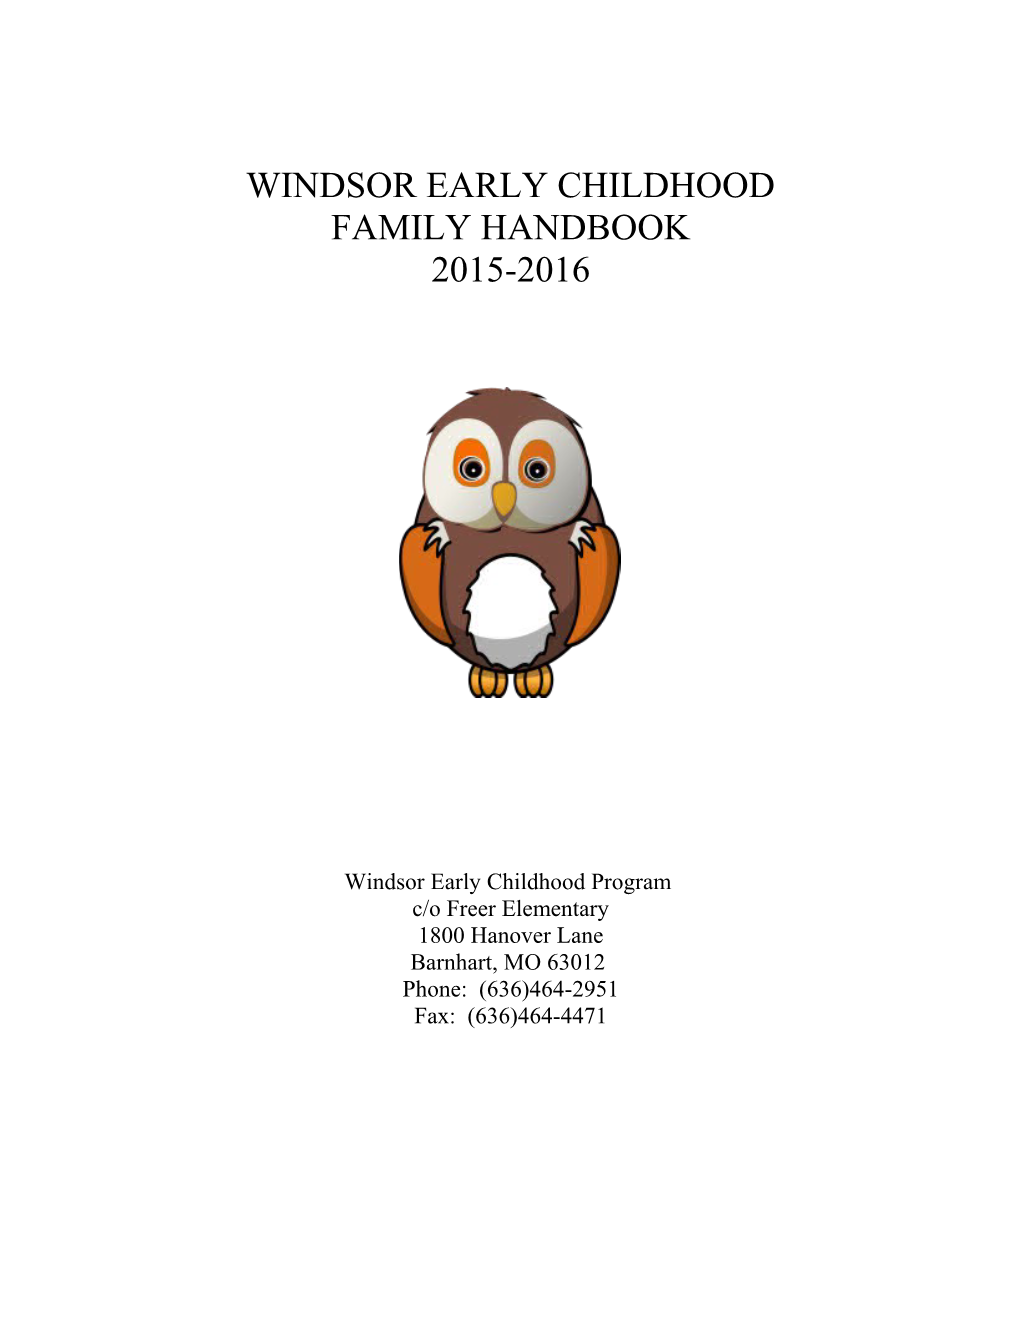 Windsor Early Childhood